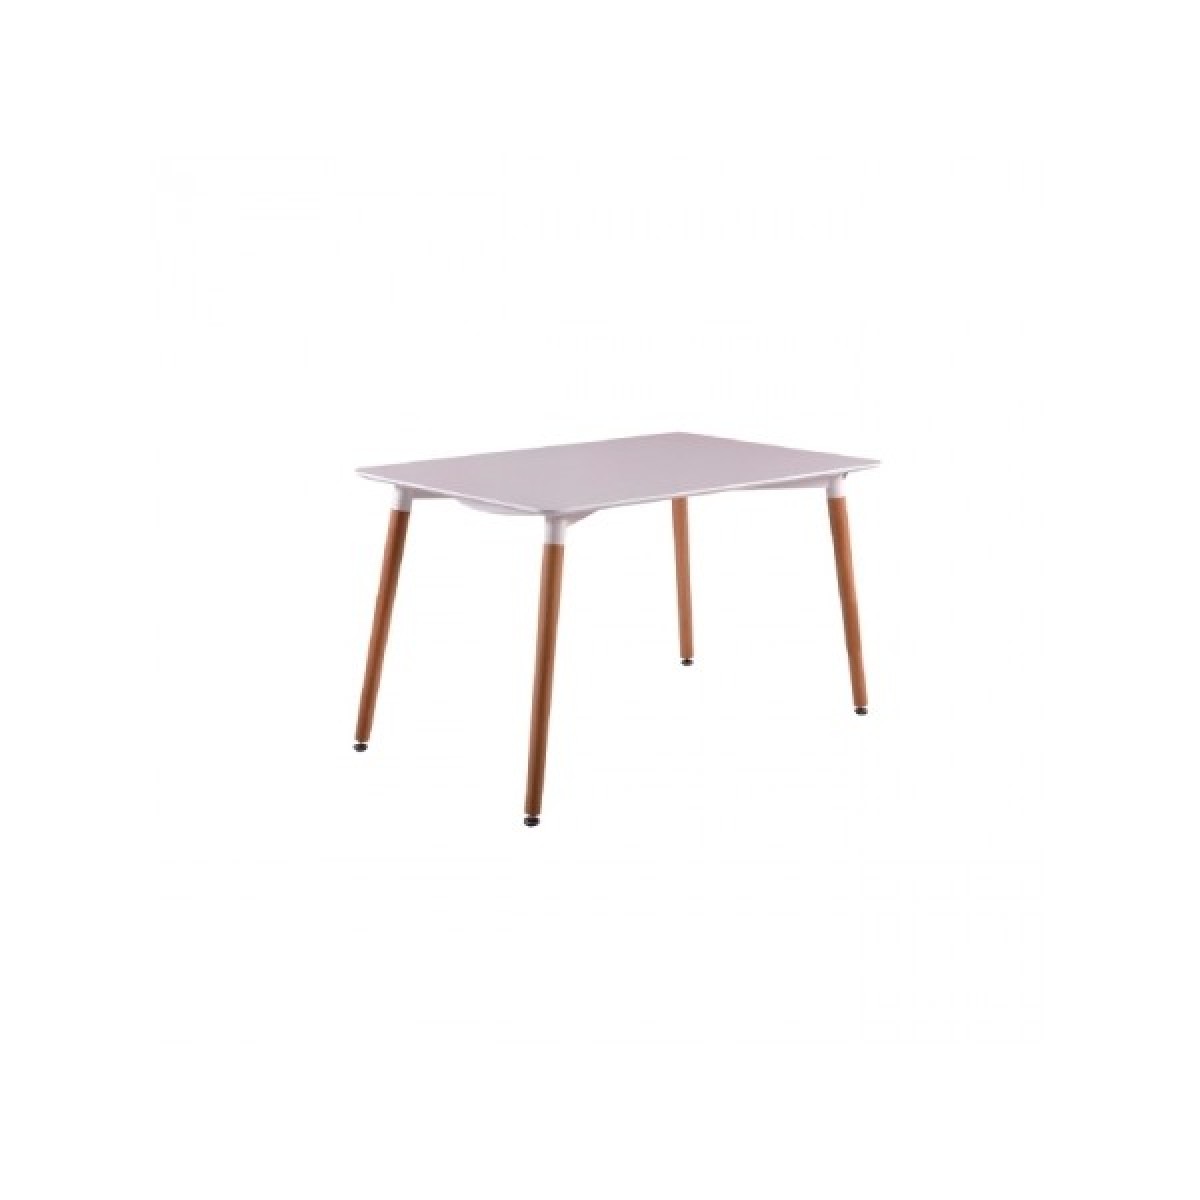 Τραπέζι Art ξύλινο 120Χ80 απο MDF σε λευκό χρώμα και ξύλινα πόδια σε φυσικό χρώμα E7088.1